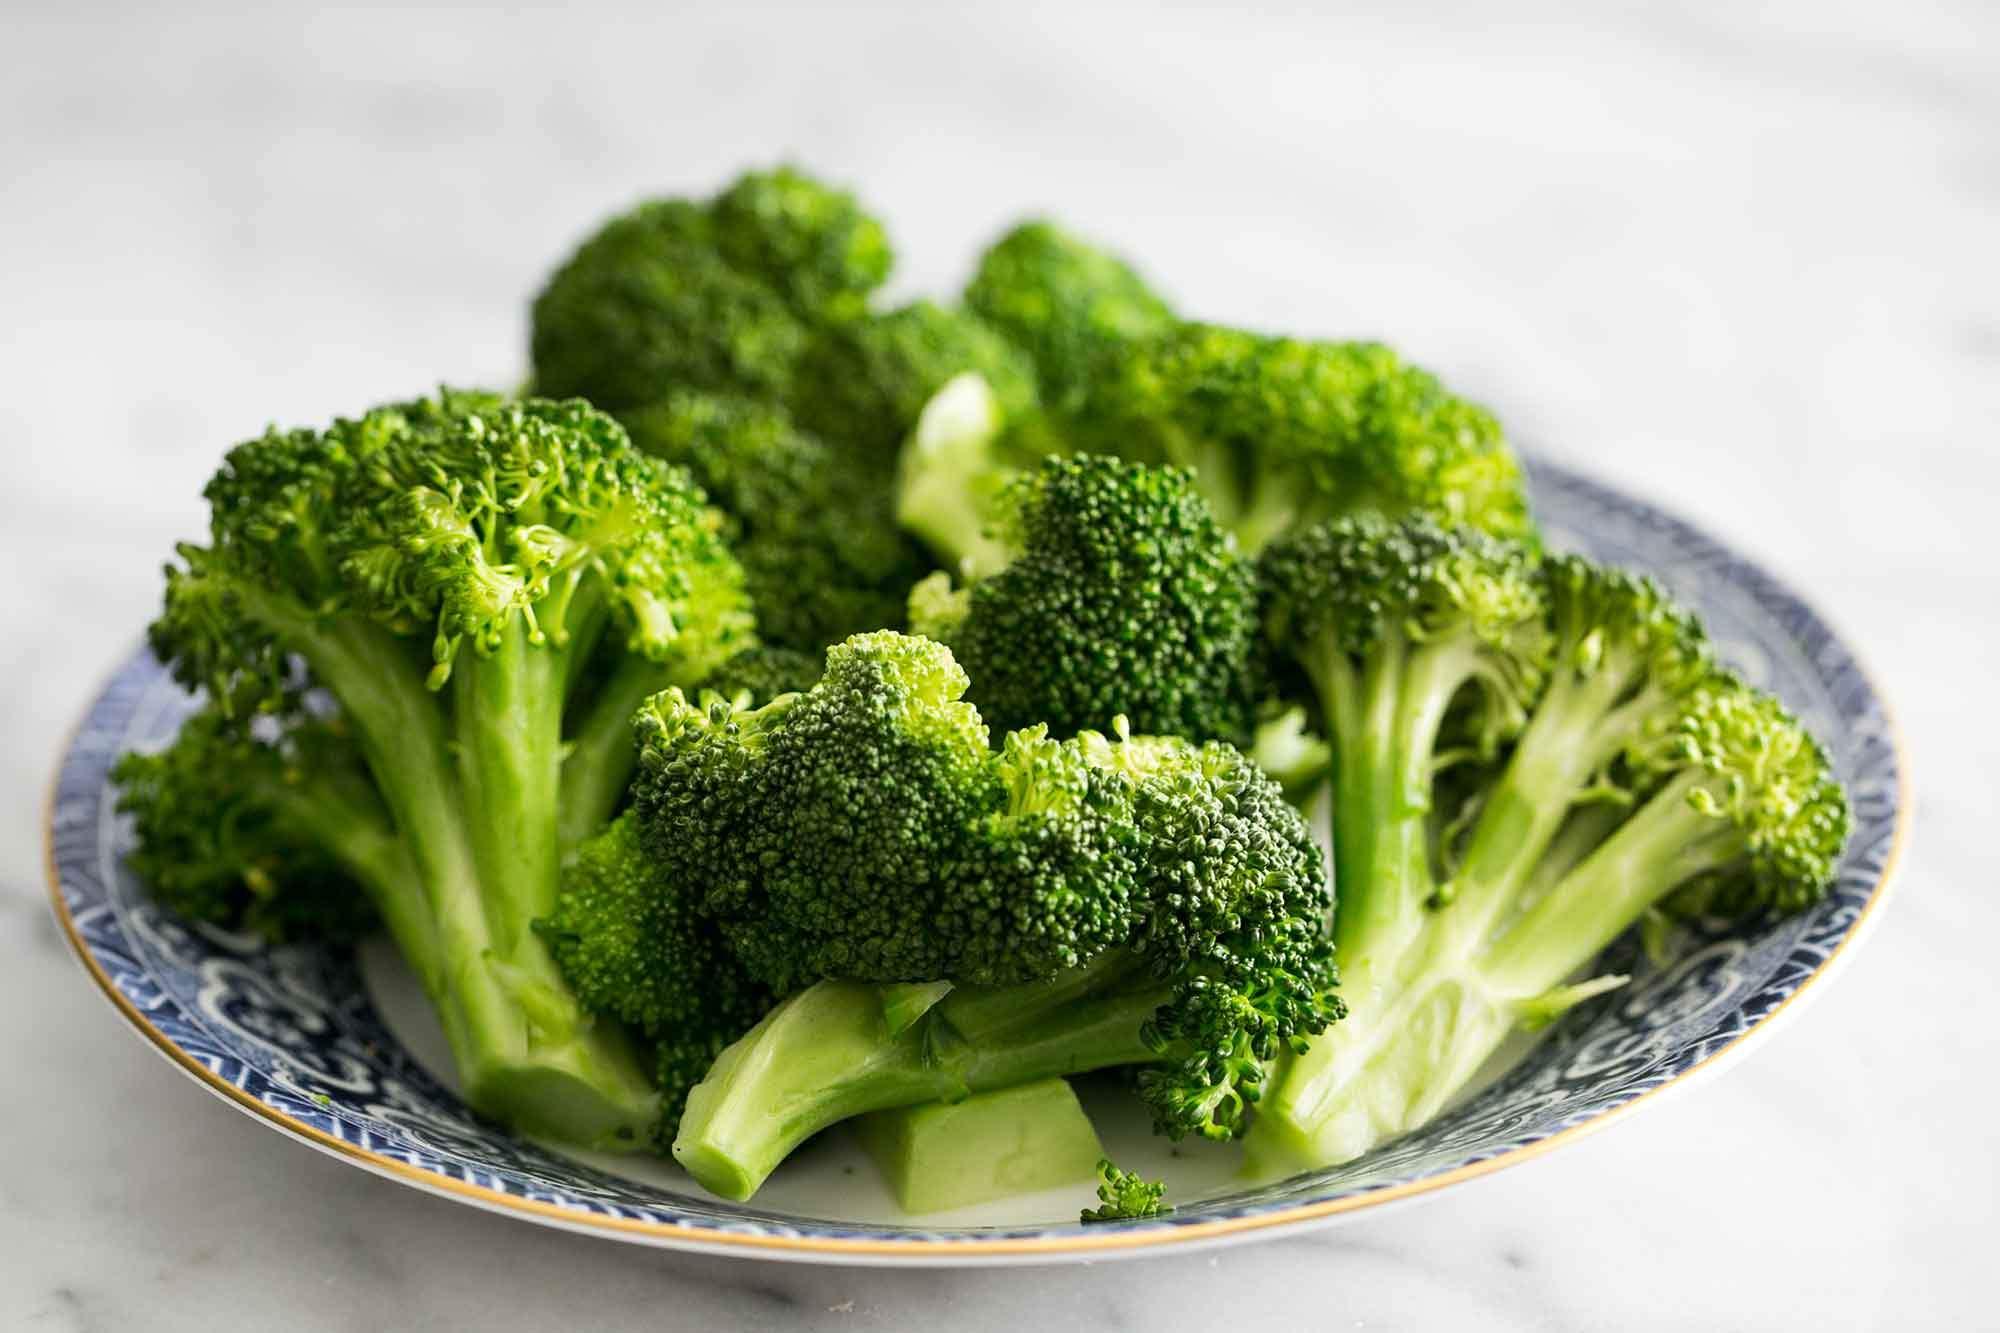 Ovo povrće bogato je i antioksidansima koji čuvaju zdravlje - Avaz